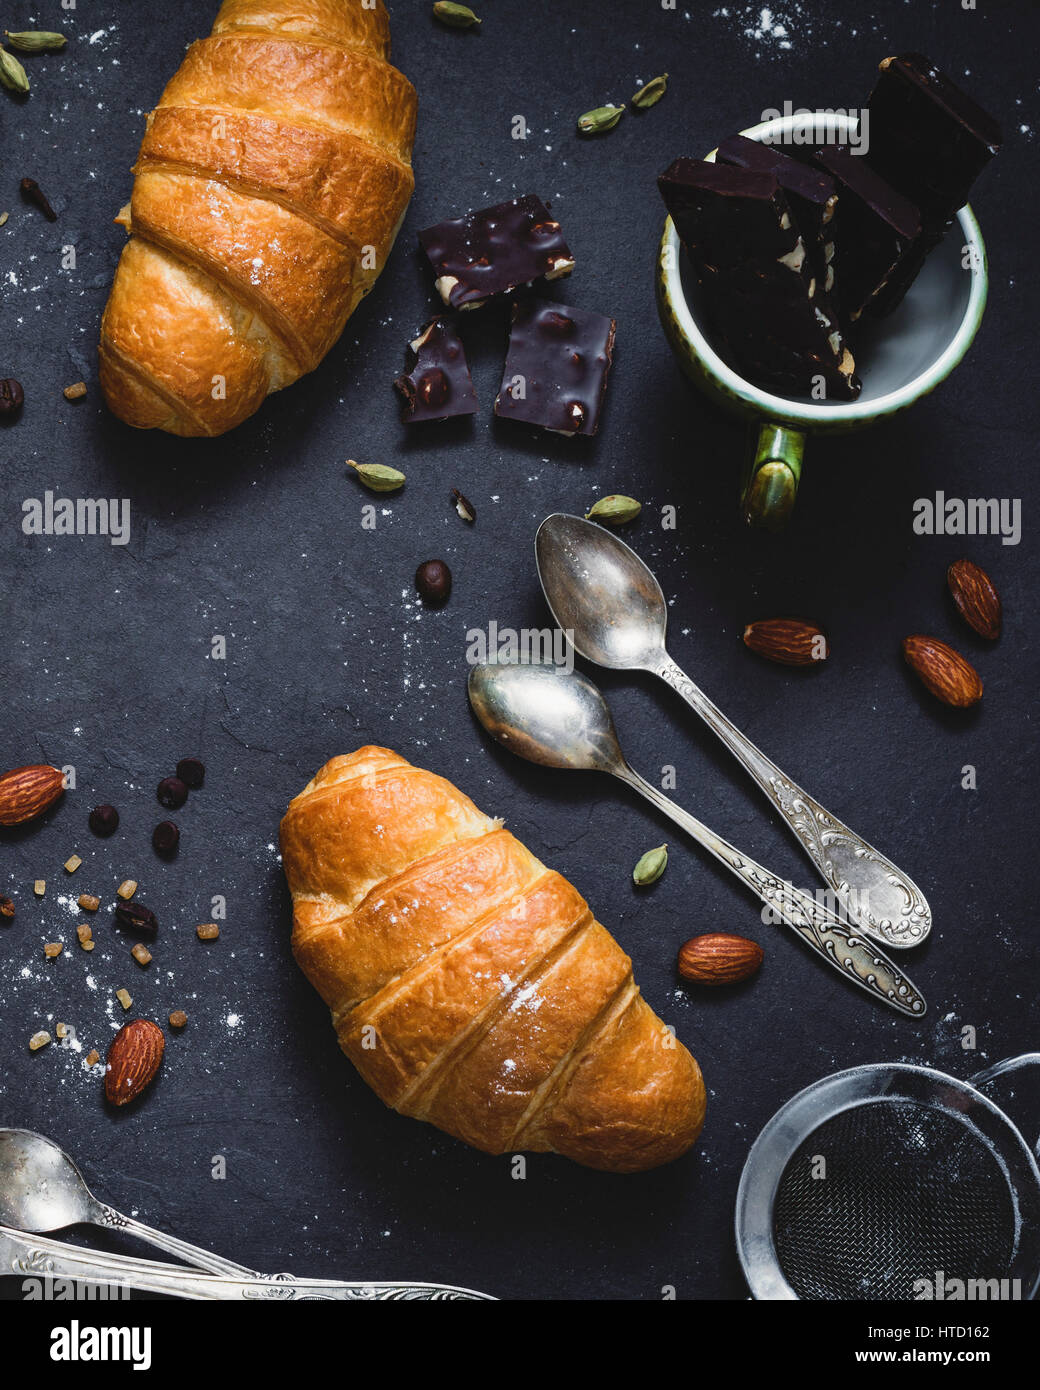 Frische Croissants, Schokolade, Gewürzen und Nüssen auf dunkle Tafel Hintergrund. Essen-Stilleben. Ansicht von oben Stockfoto